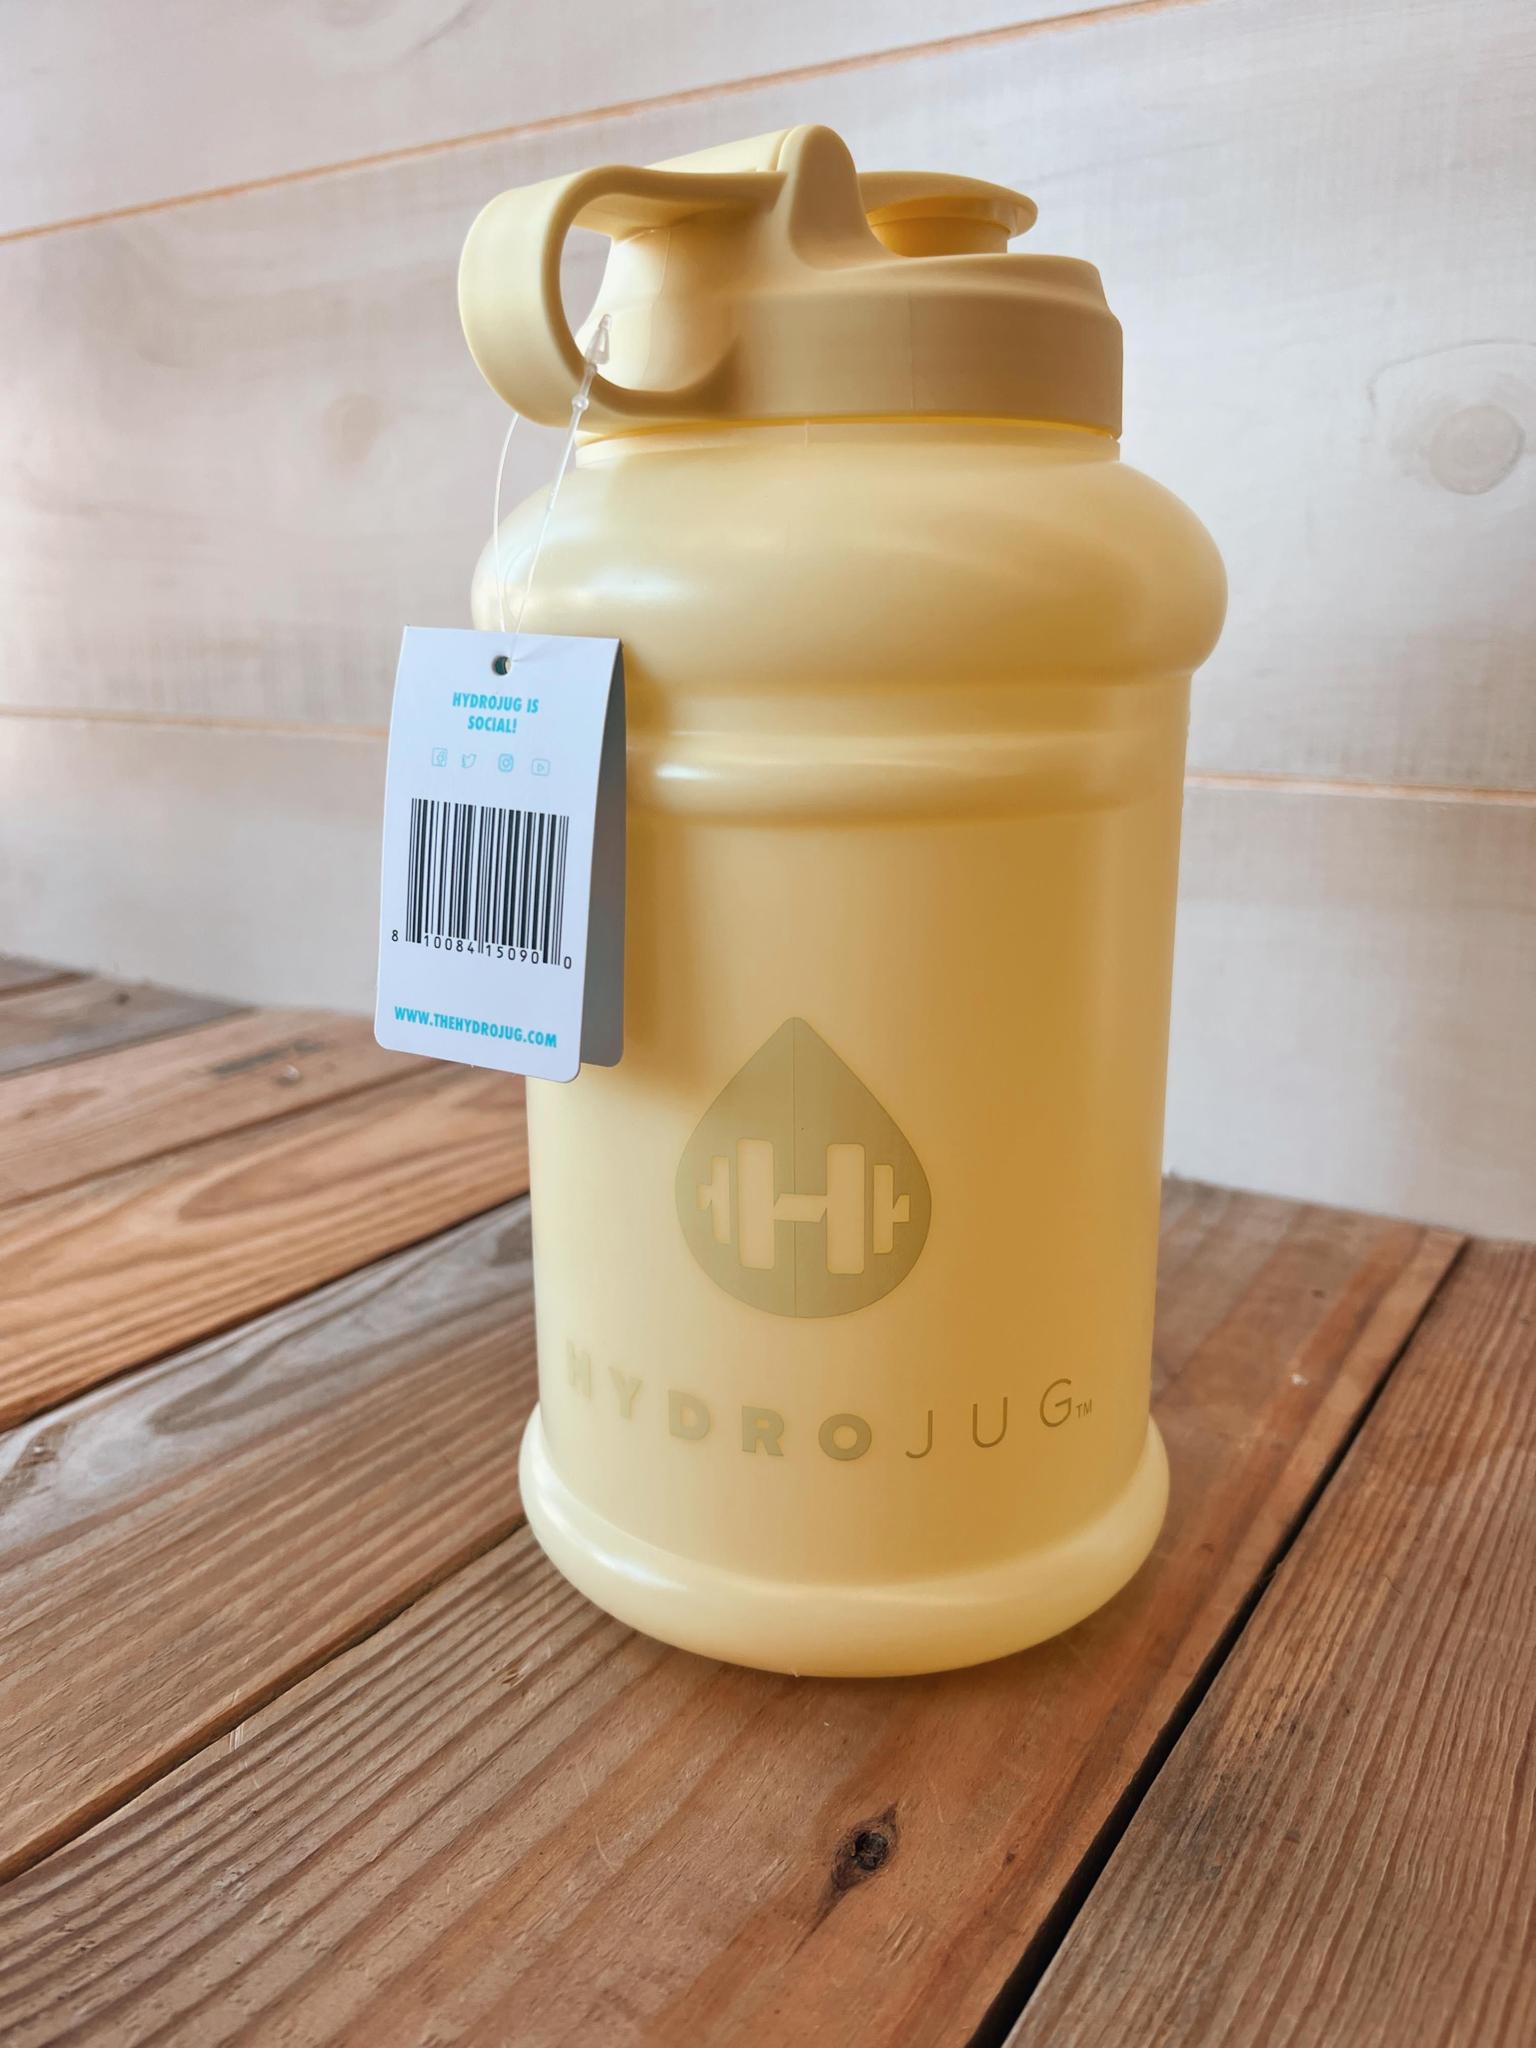 HydroJug Pro Water Bottle in Black